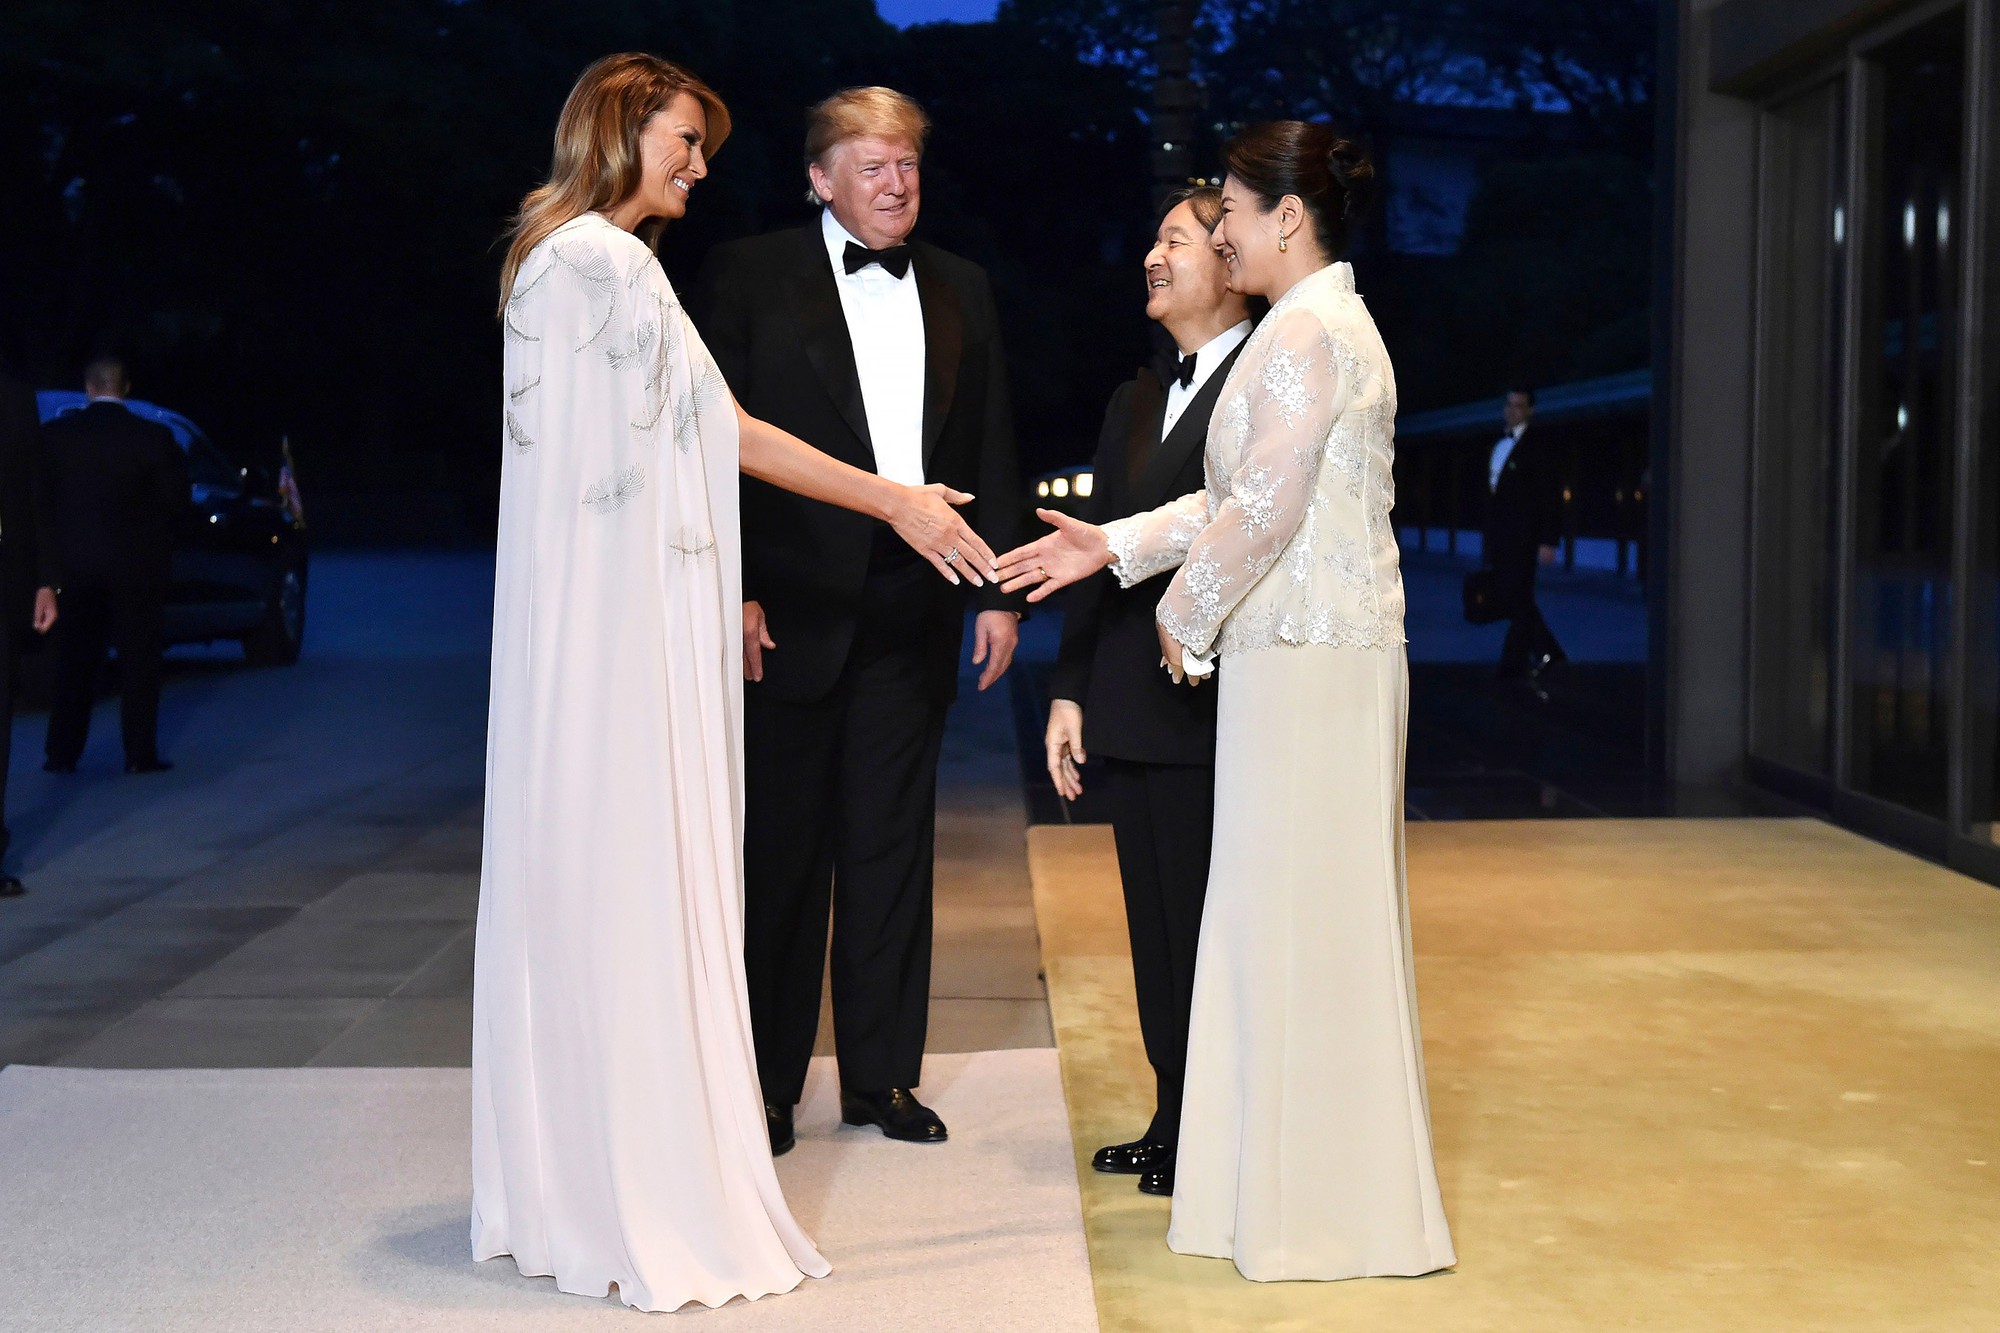 Hoàng hậu Masako tiếp tục ghi điểm tuyệt đối trong tiệc chiêu đãi nhờ một loạt hành động này, đến Tổng thống Trump cũng hài lòng, vui vẻ - Ảnh 1.